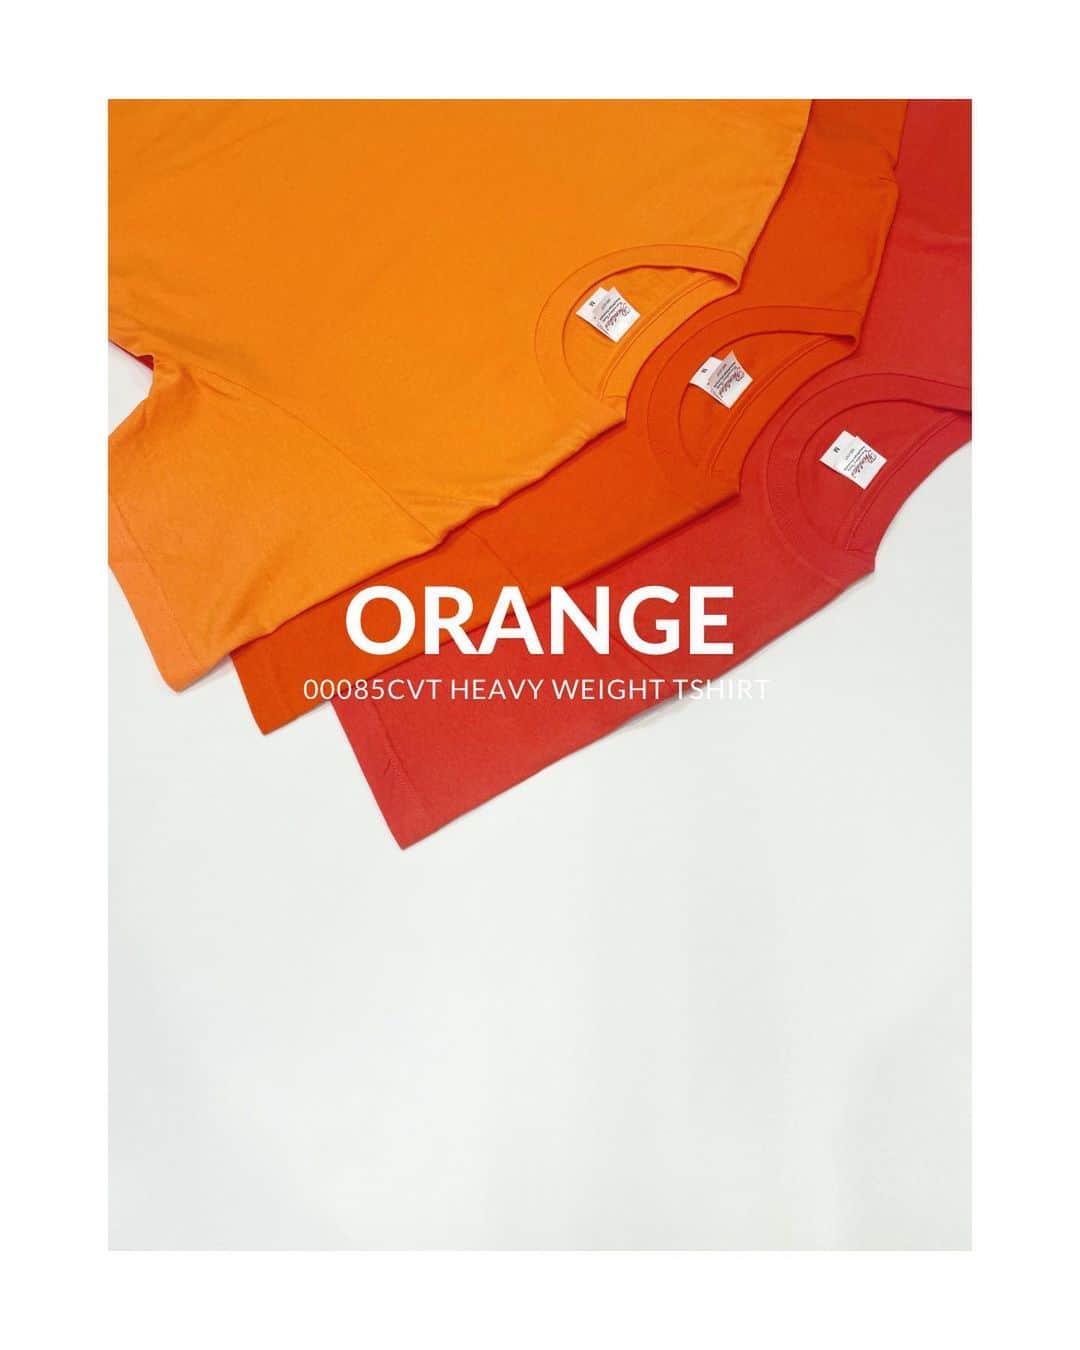 Printstarのインスタグラム：「ORANGE✴︎ Printstar 00085-CVT 5.6オンス ヘビーウェイトTシャツ  170 コーラルオレンジ 015 オレンジ 038 サンセットオレンジ  累計売上枚数1.7億枚。程よい生地の厚みと、型崩れしにくい安心の品質で、20年以上にわたり愛され続ける不動の人気Tシャツです。  50色以上の多彩なカラーバリエーションで展開し、世代、ジェンダー、地域を問わず、さまざまなシチュエーションで皆さまにご愛用いただいています。  #printstar #プリントスター #プリンタブルウェア」